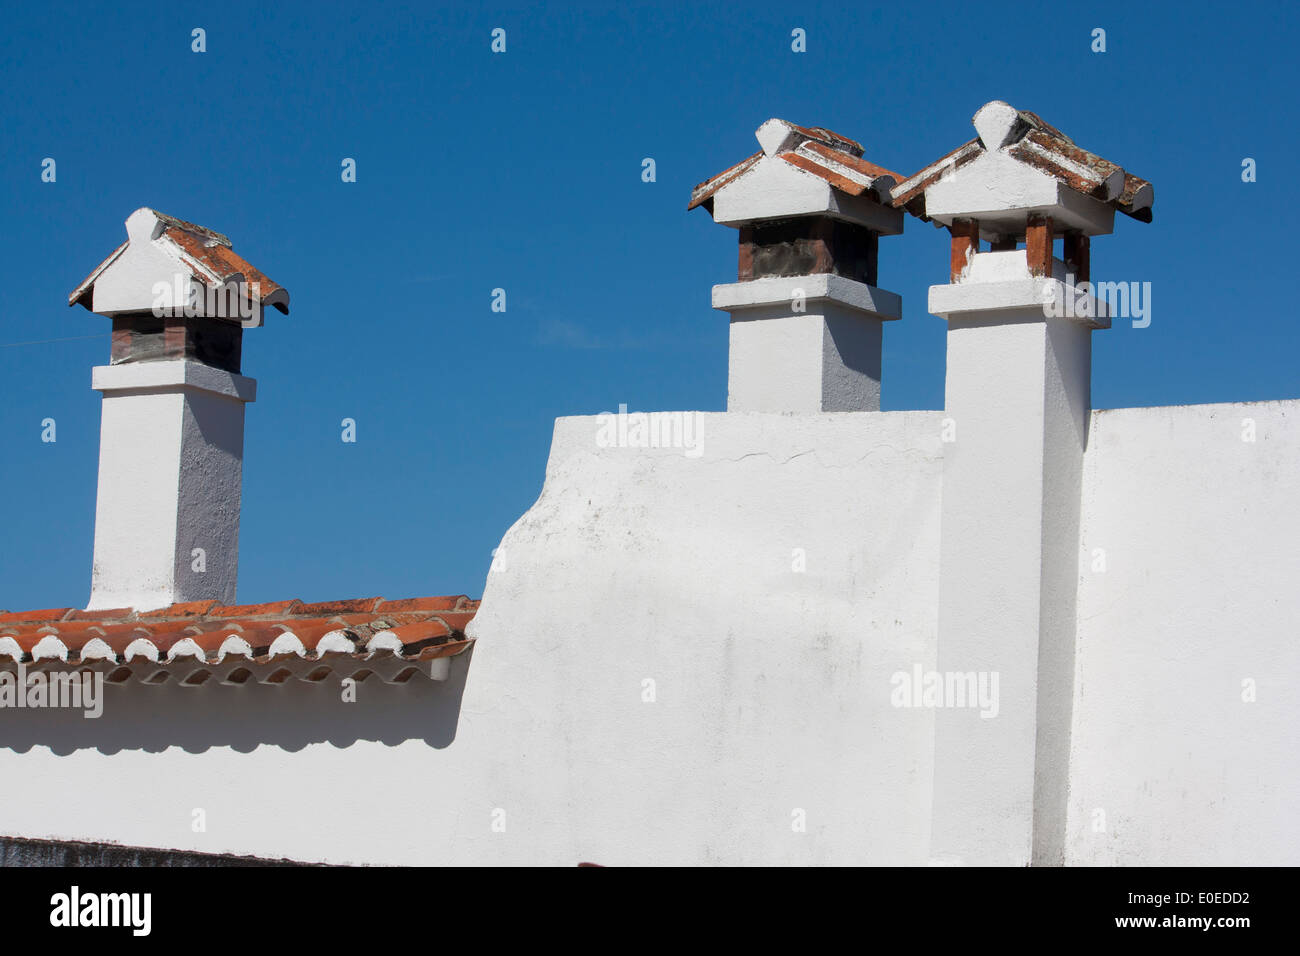 Traditionelle Kamine auf weiss gestrichenen Häusern mit Terrakotta-Dachziegel Marvao Alentejo Portugal Stockfoto